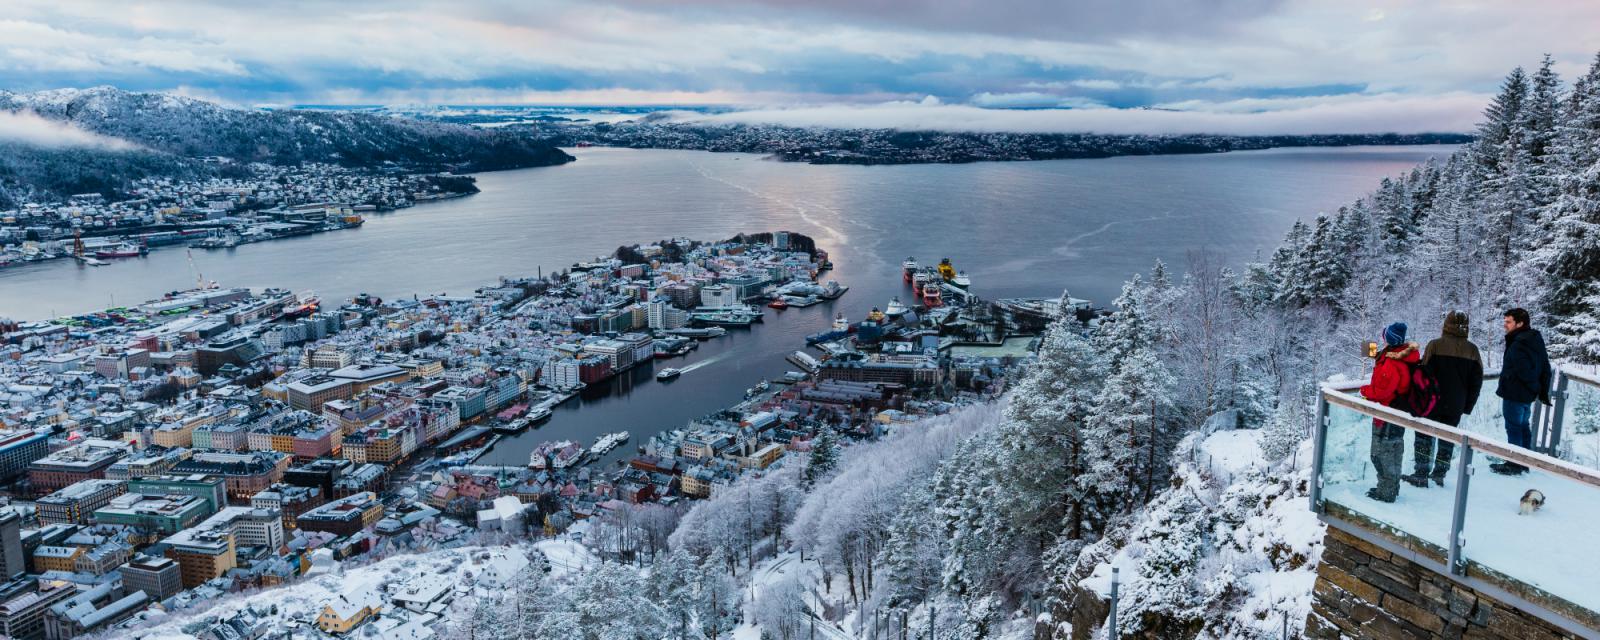 Beleef magische momenten in het winterparadijs Noorwegen 